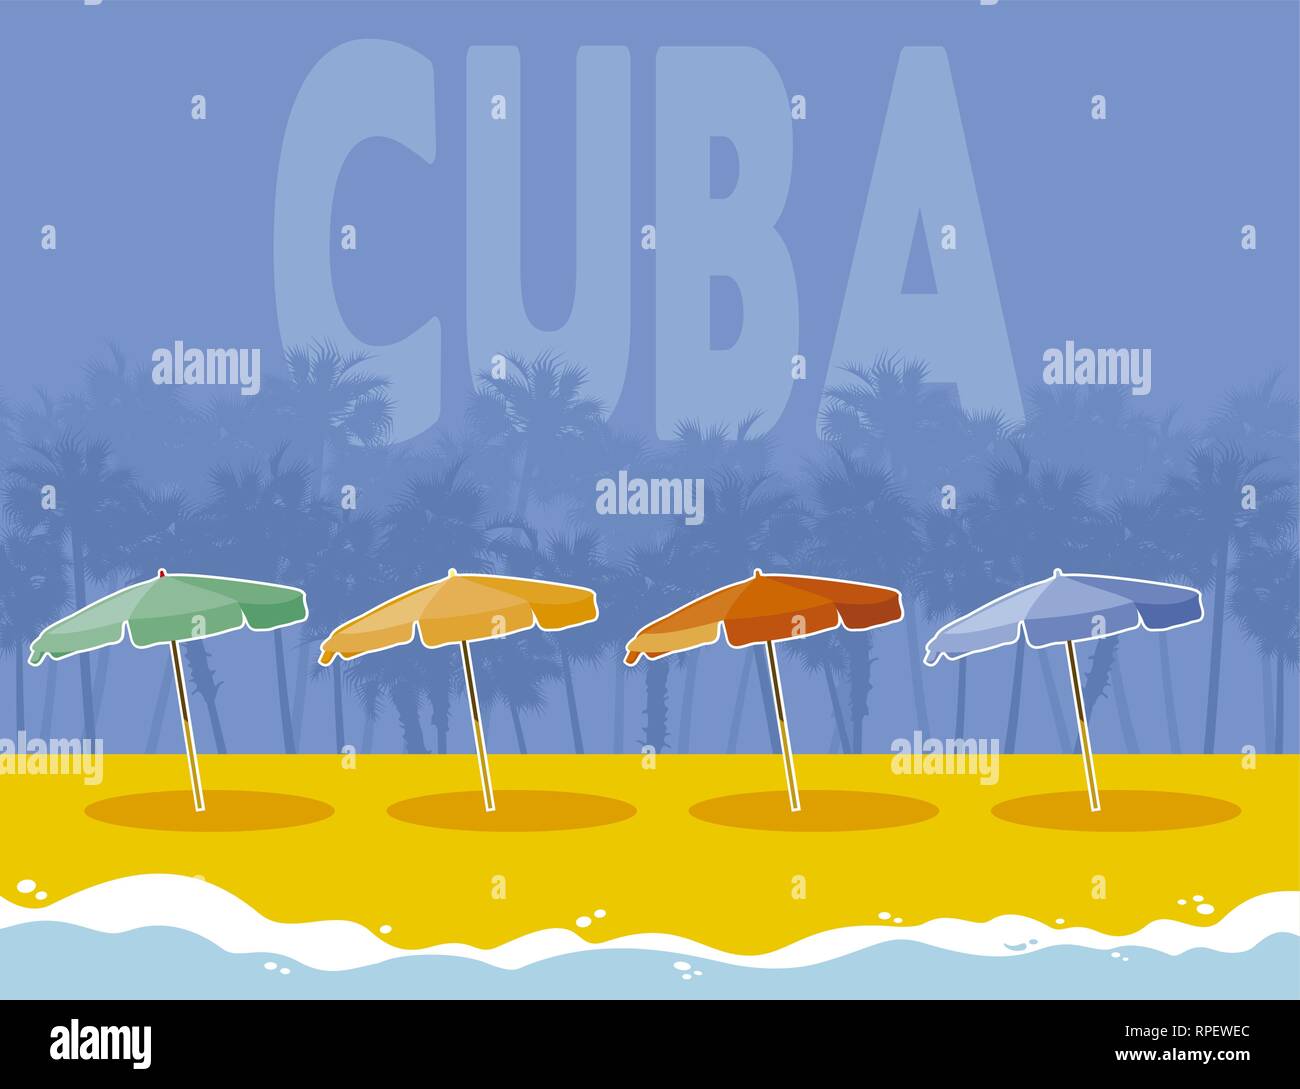 L'Avana Cuba sfondo Illustrazione Vettoriale